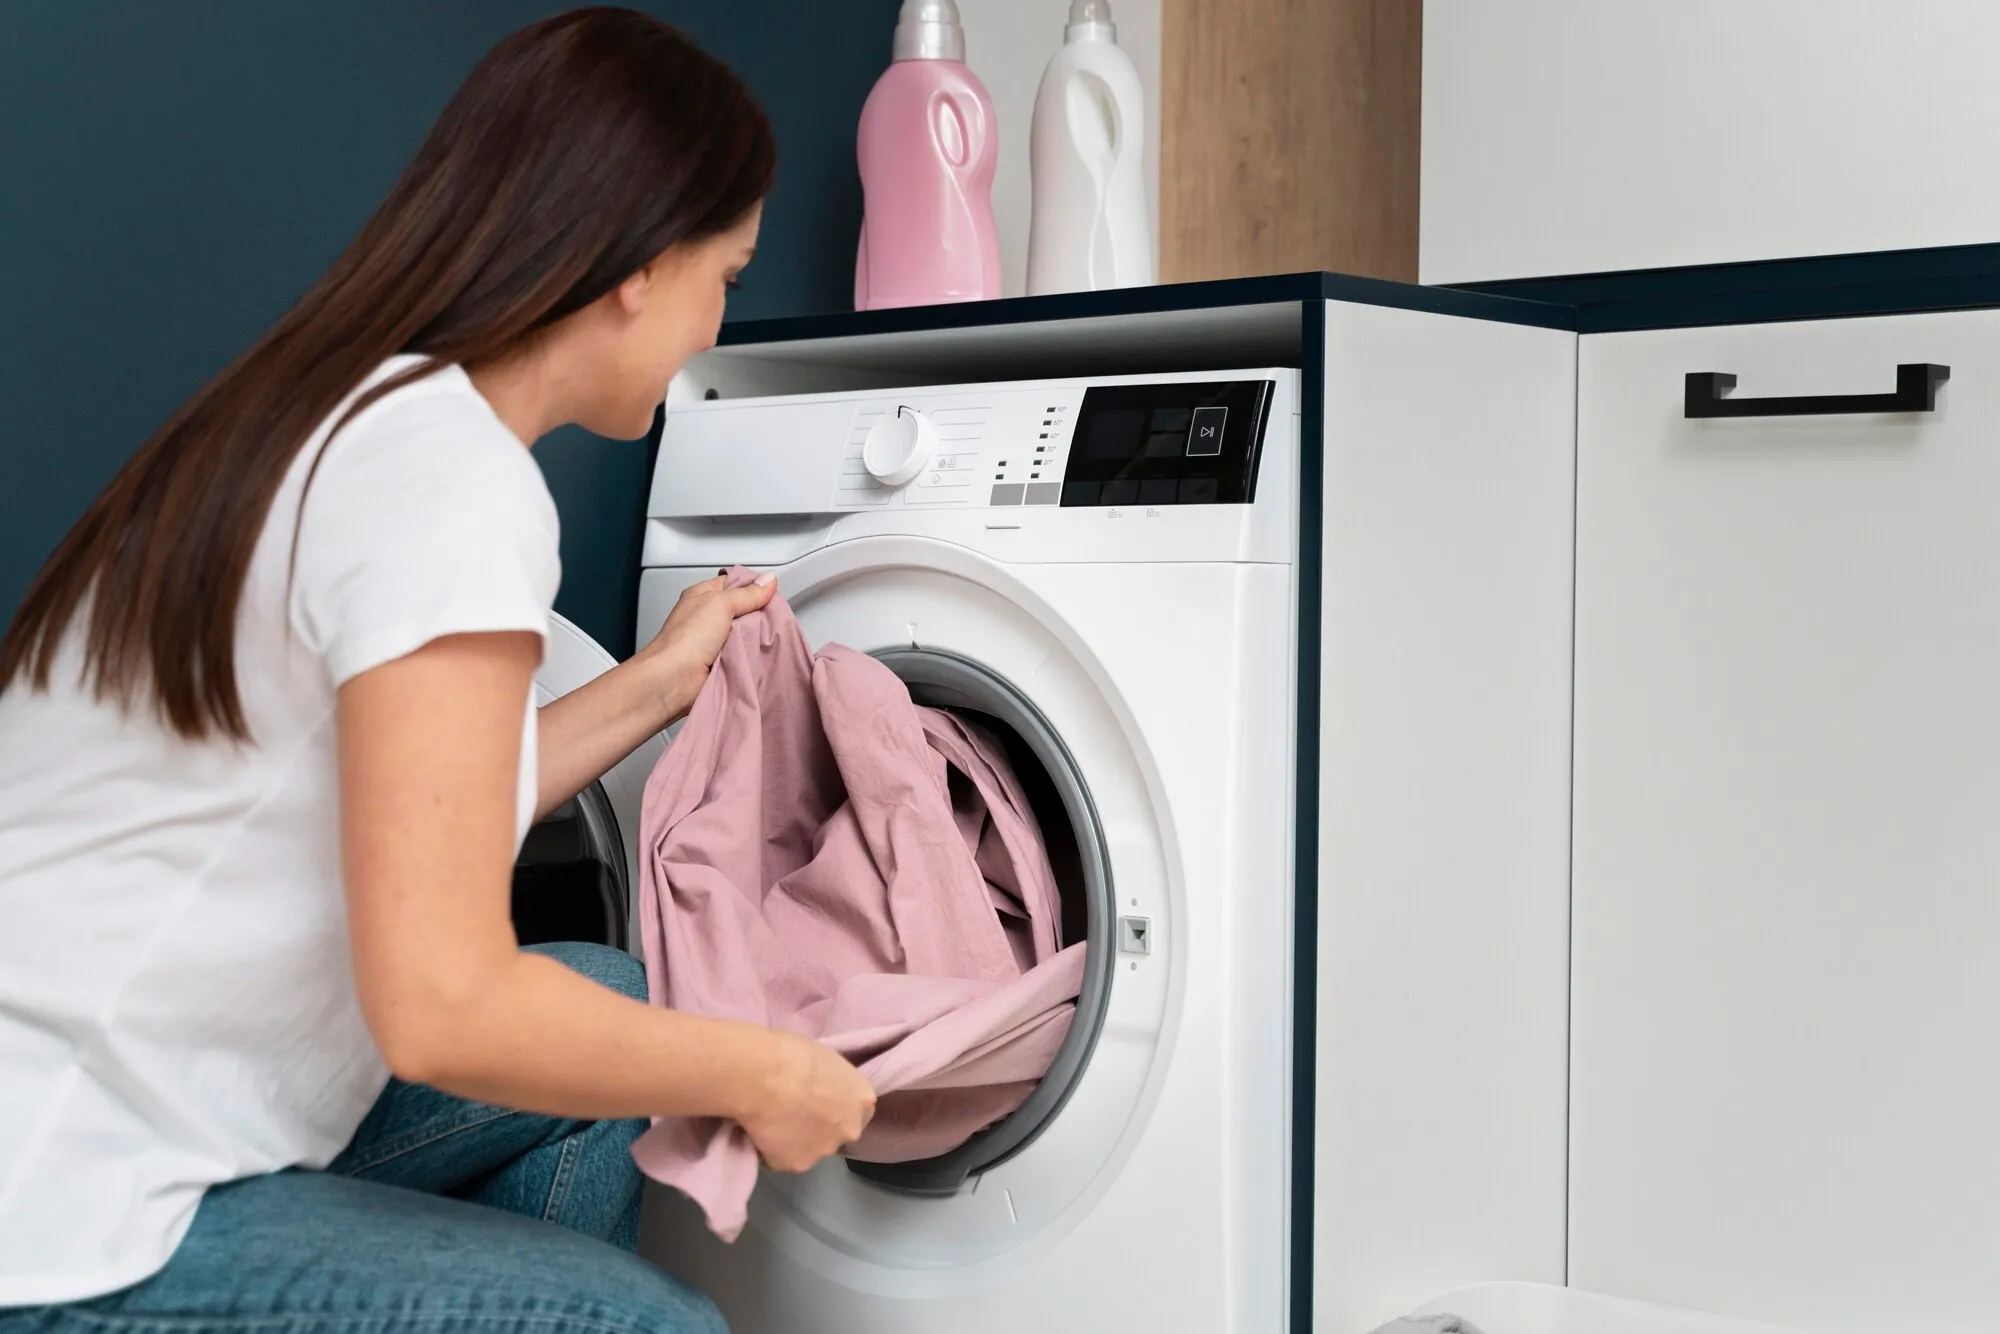 Kan je één kledingstuk in de wasmachine wassen zonder dat de wasmachine beschadigd raakt?